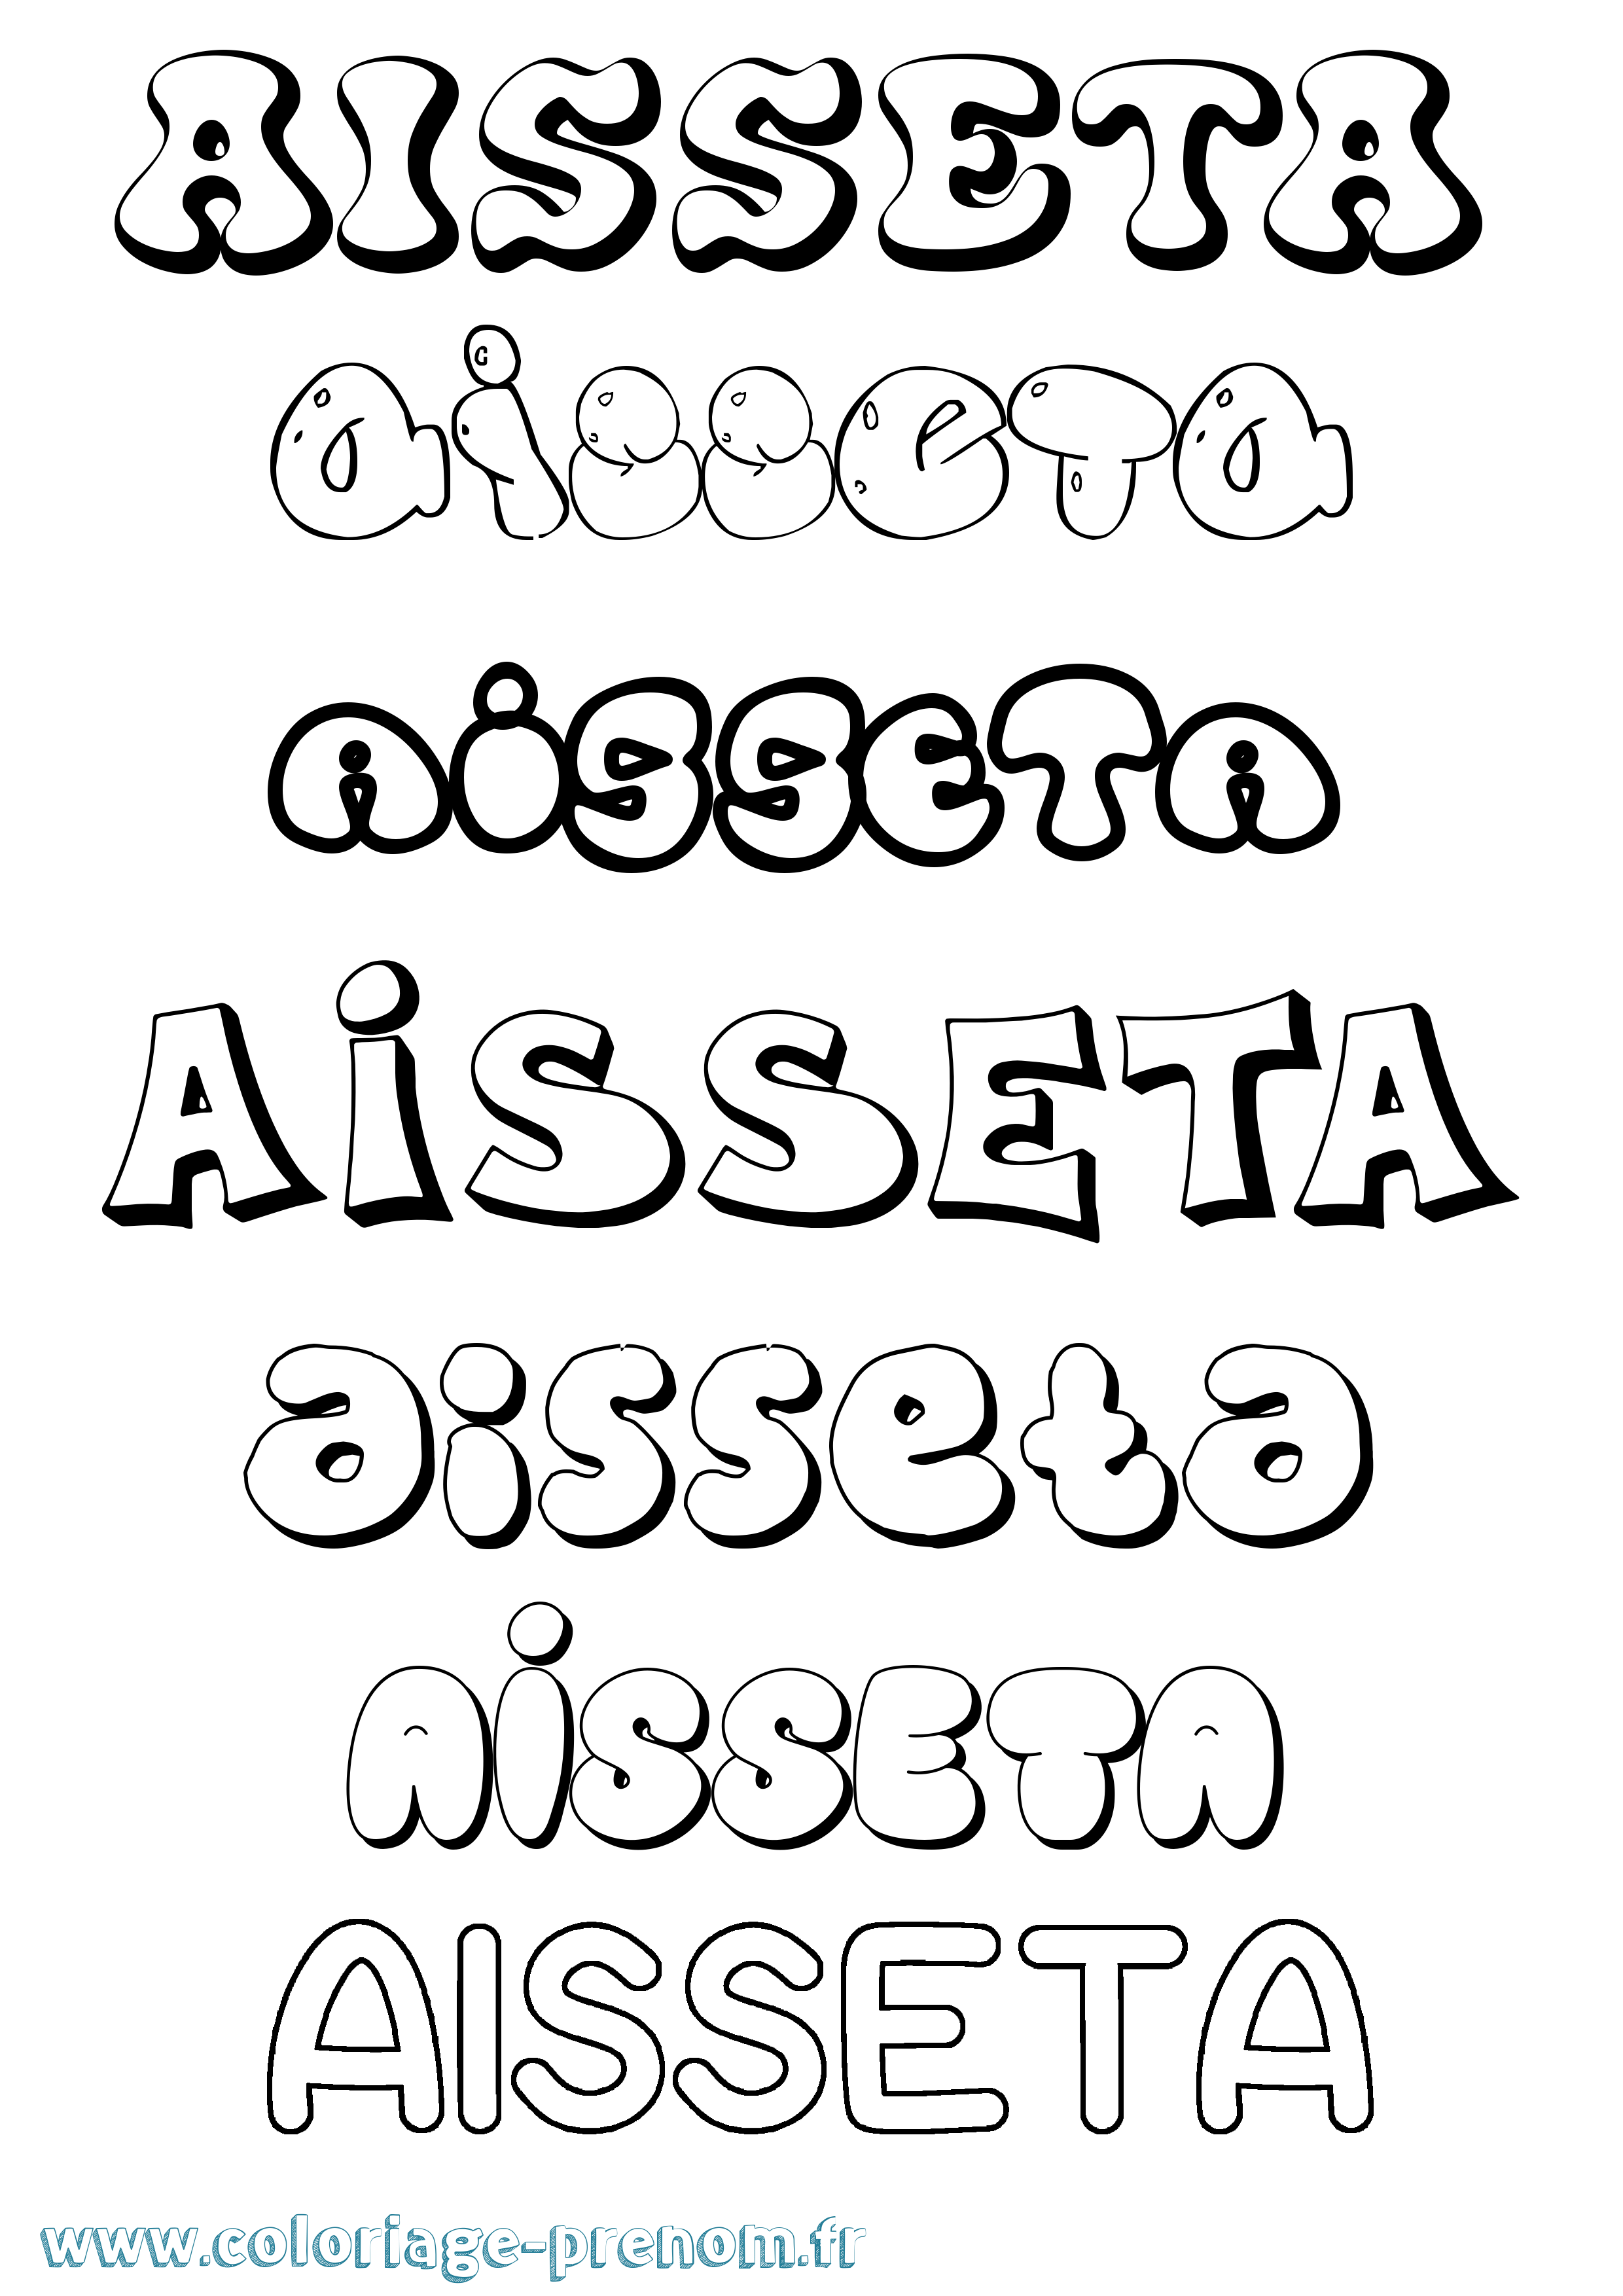 Coloriage prénom Aisseta Bubble